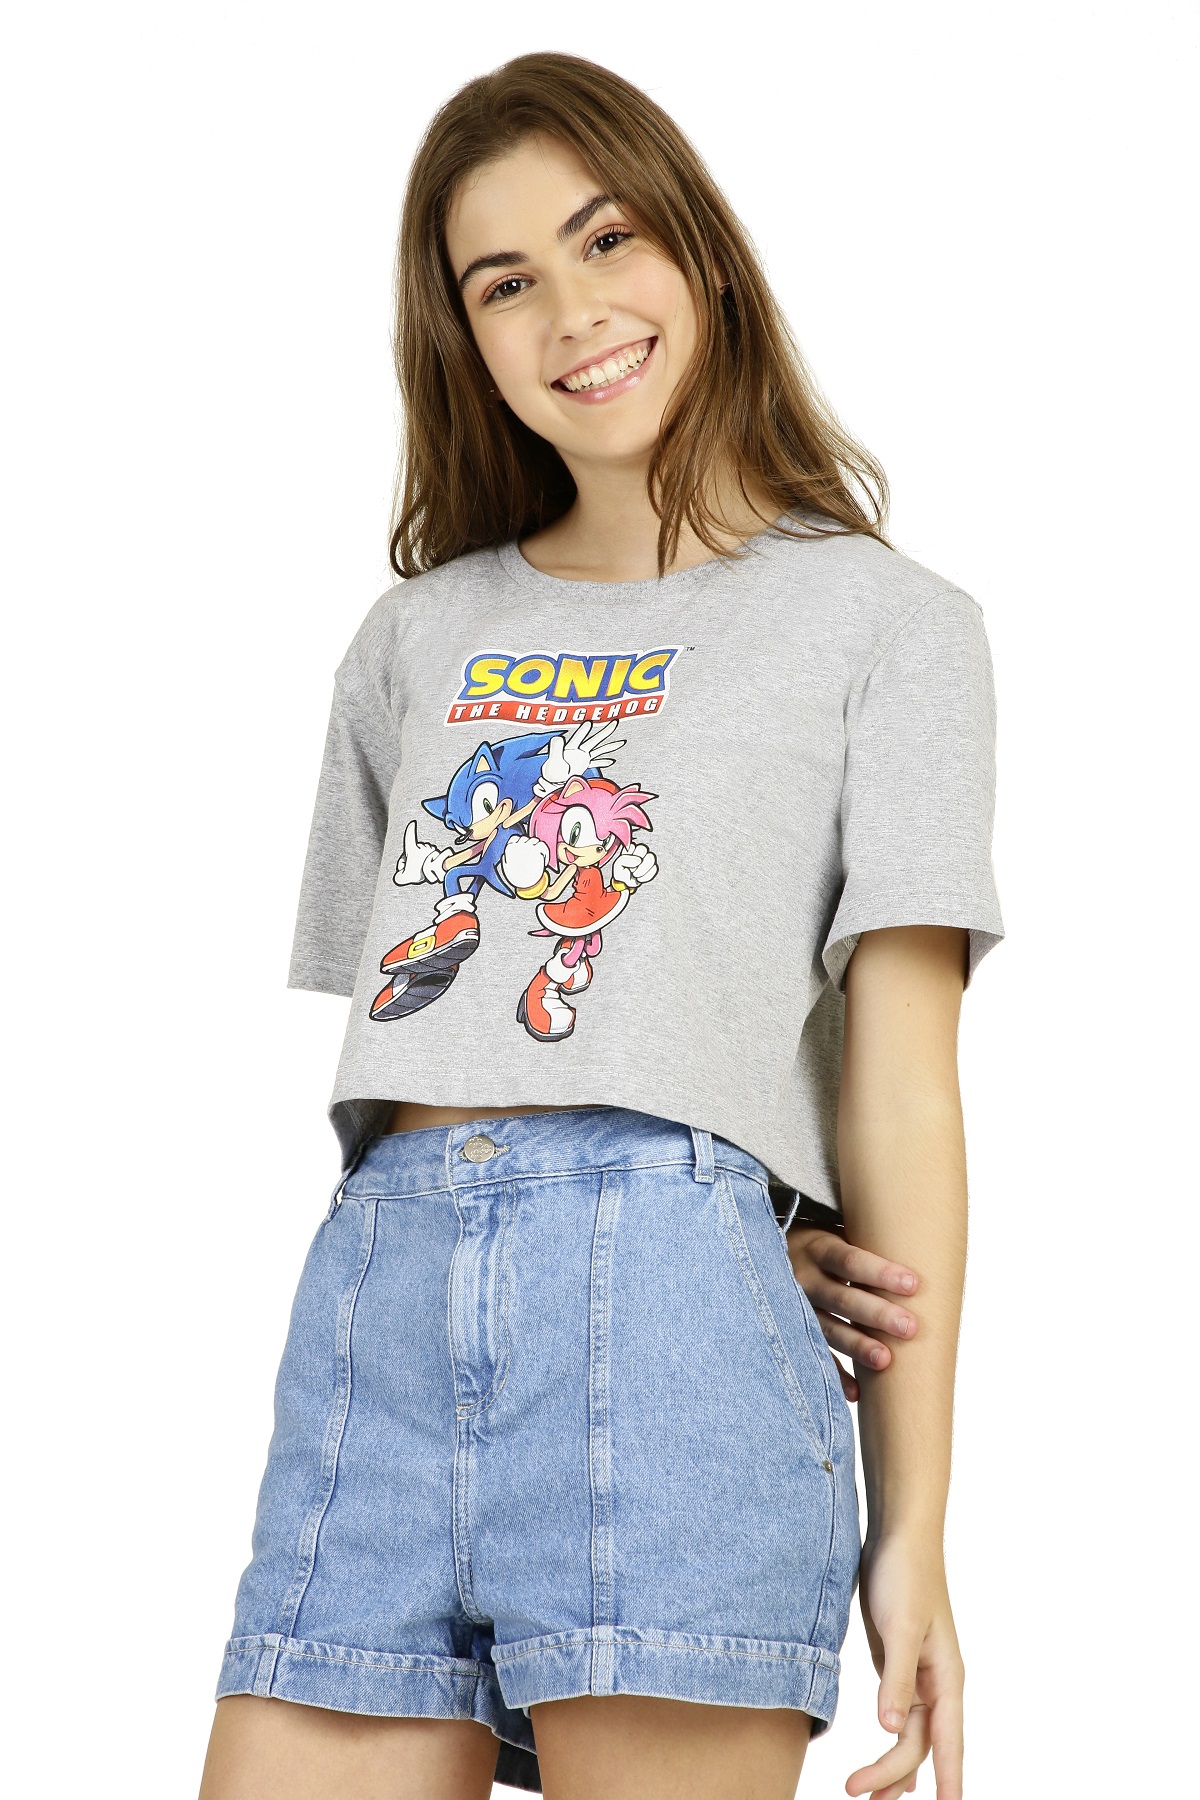 Marisa lança coleção do filme Sonic 2